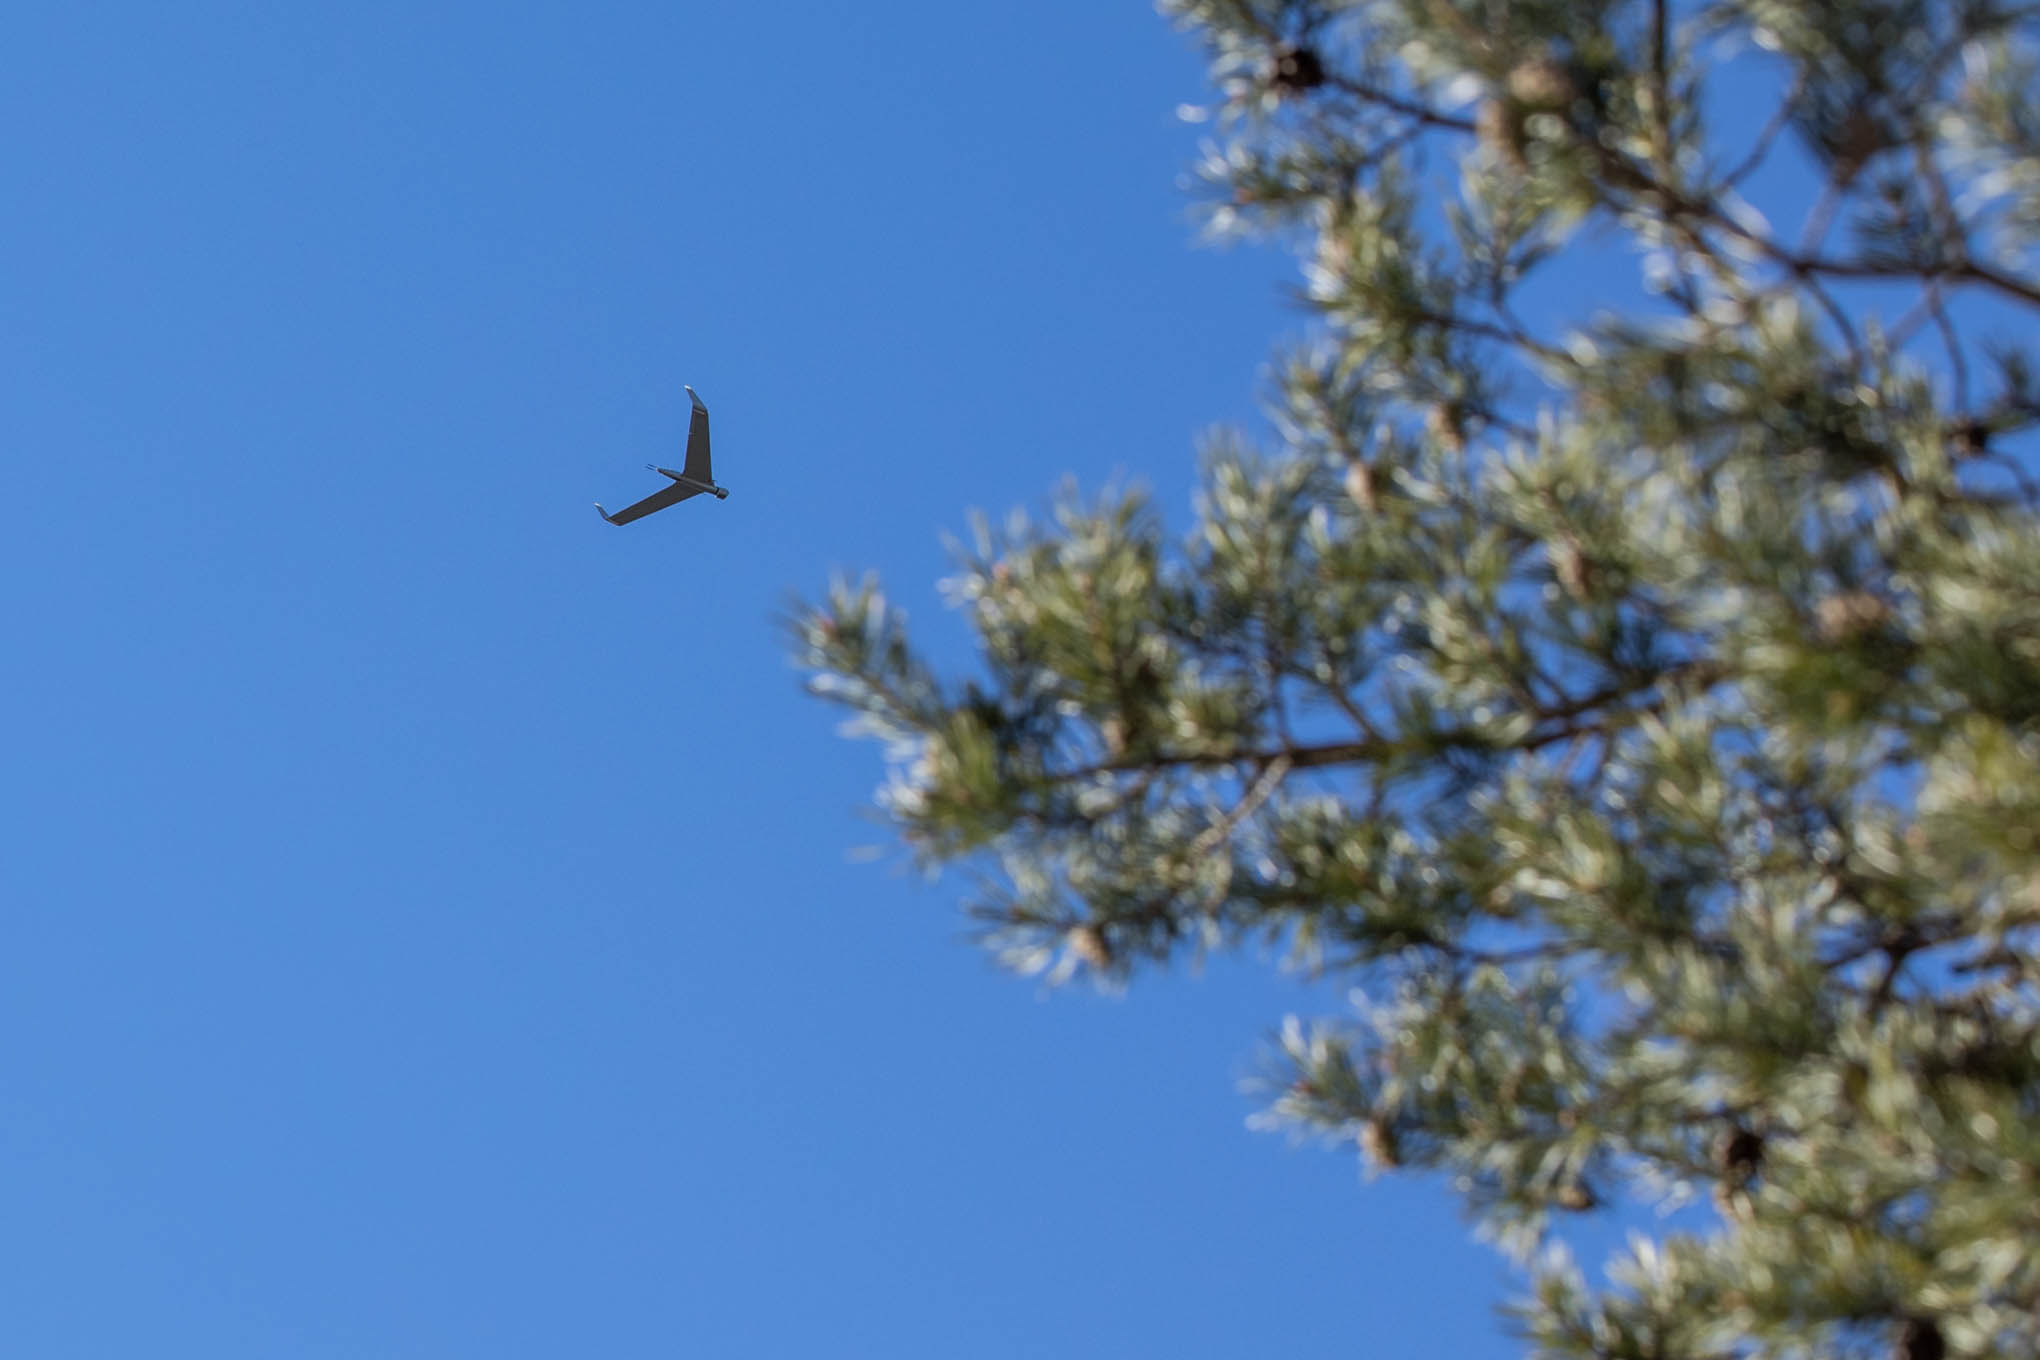 UAV plane gliding in the sky